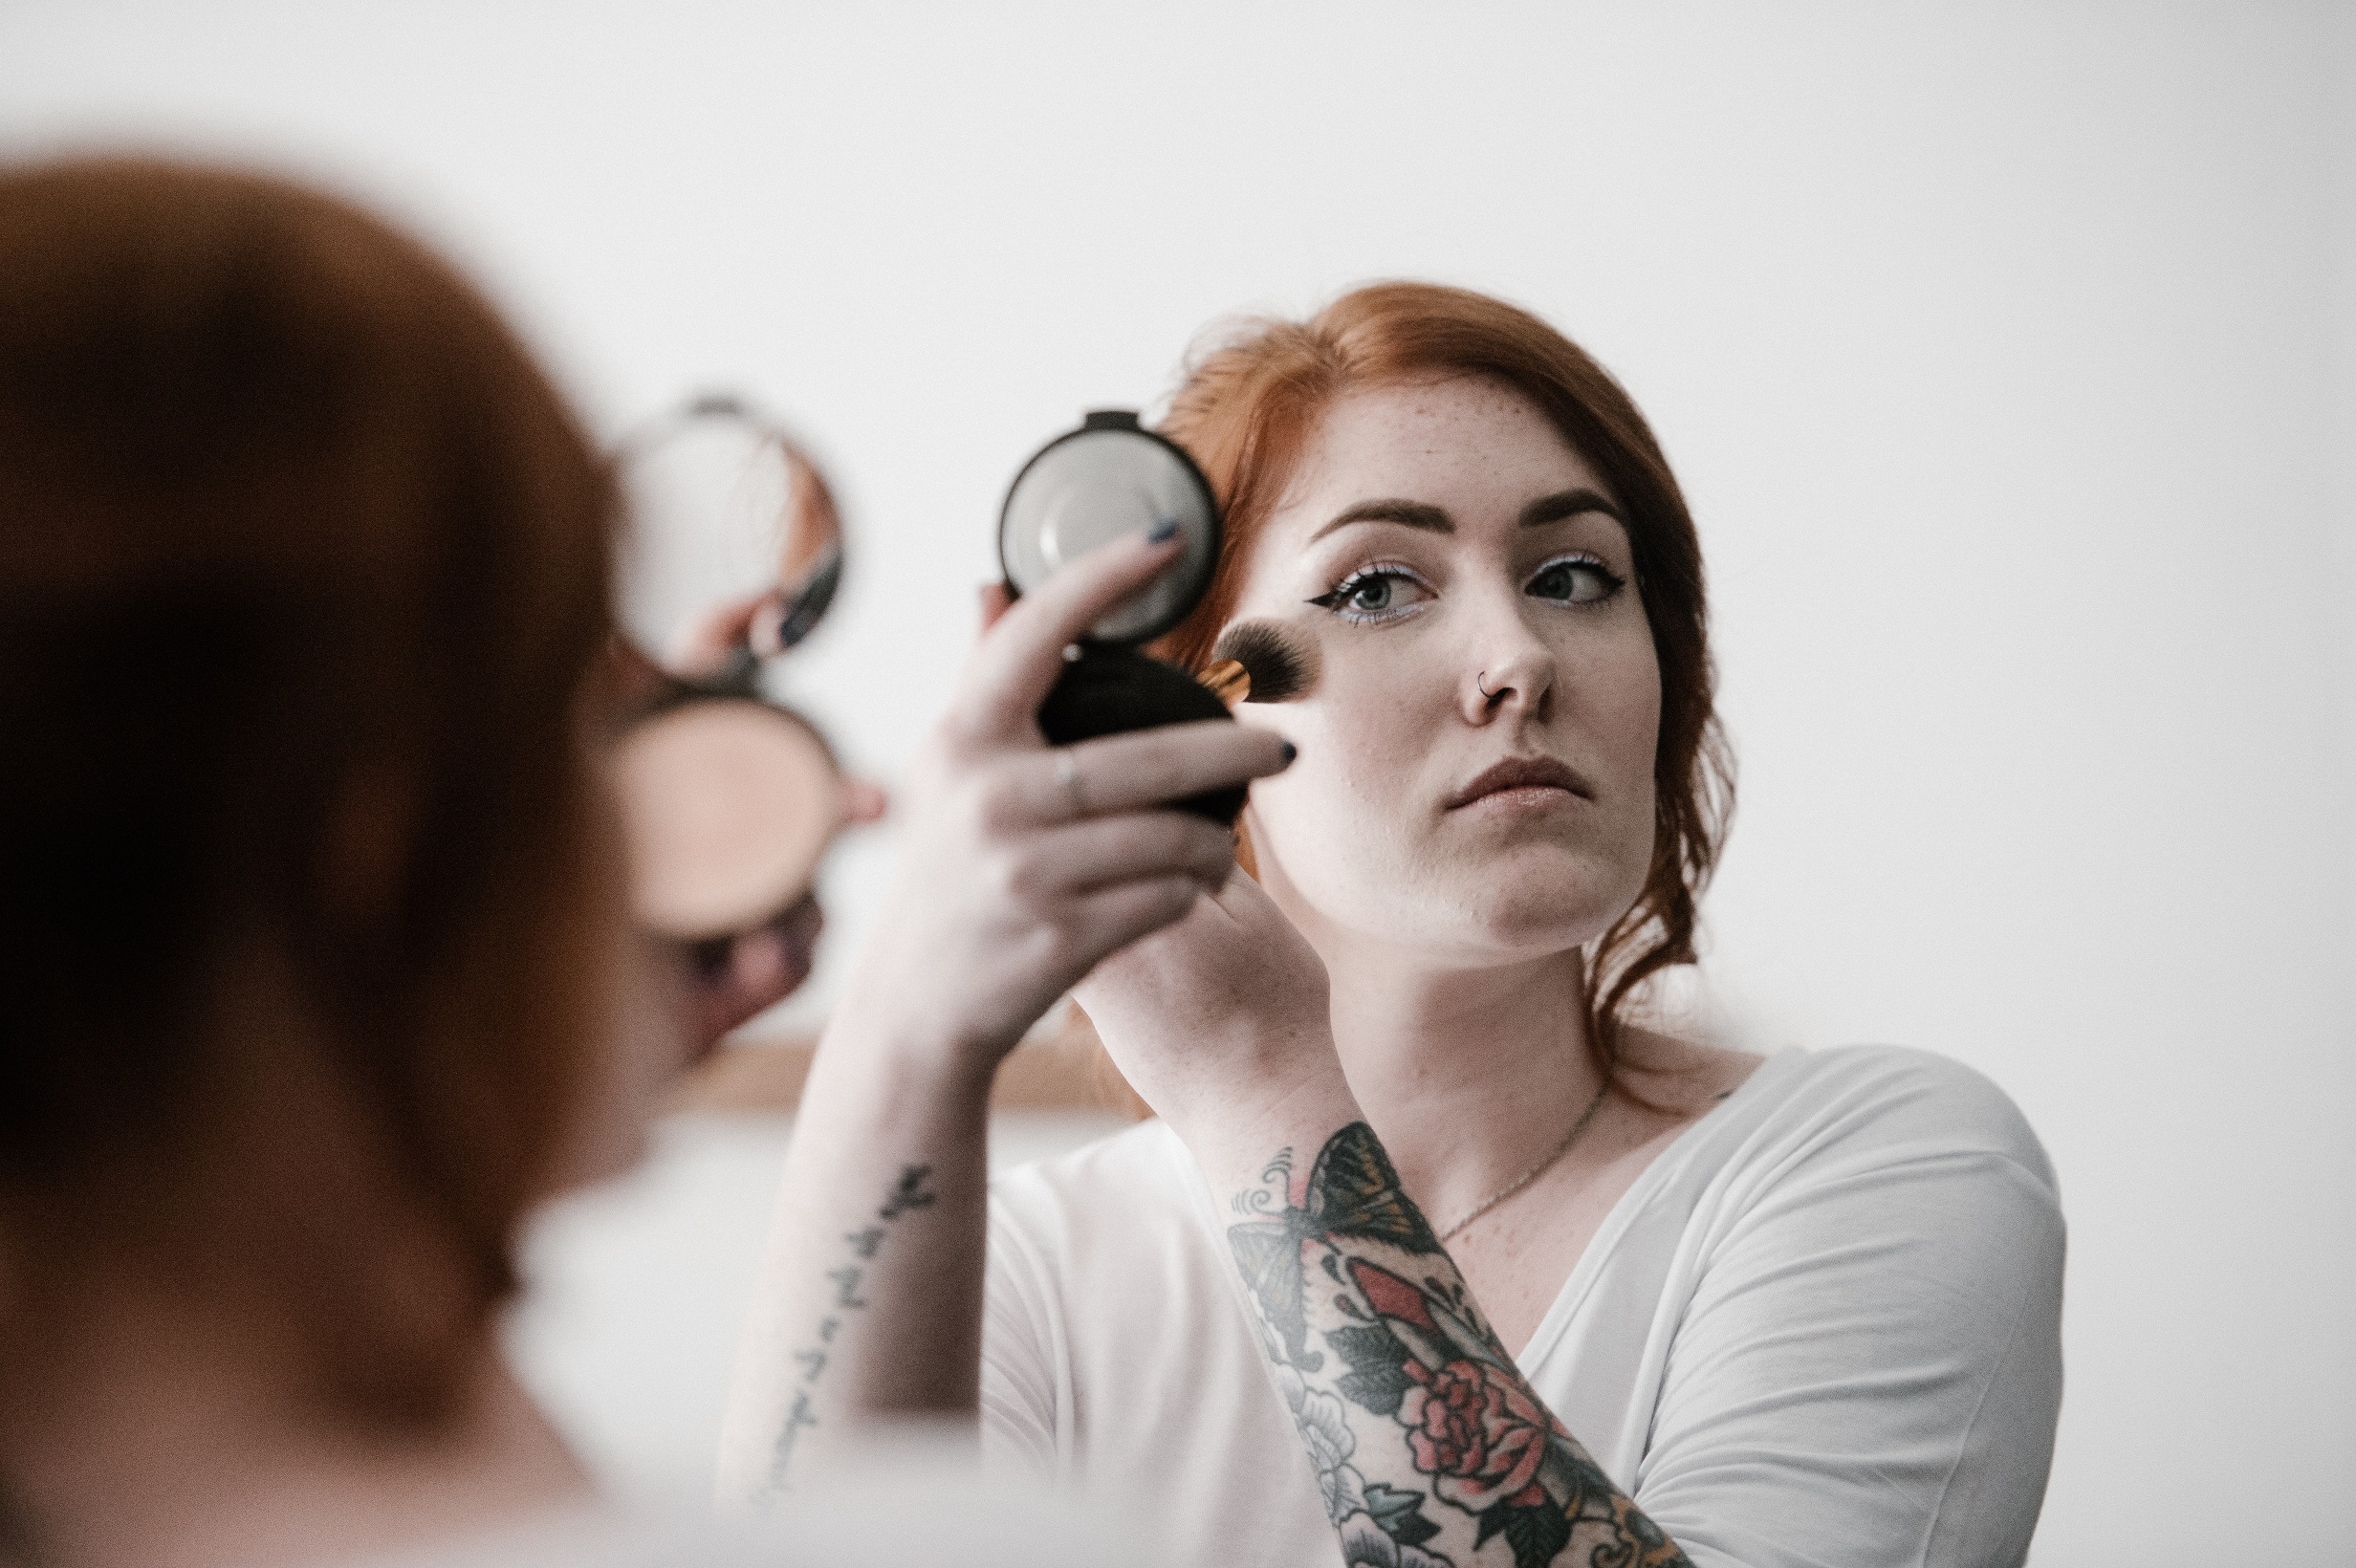 O femeie cu tatuaje se machiaza cu o pensula in timp ce se uita in oglinda.